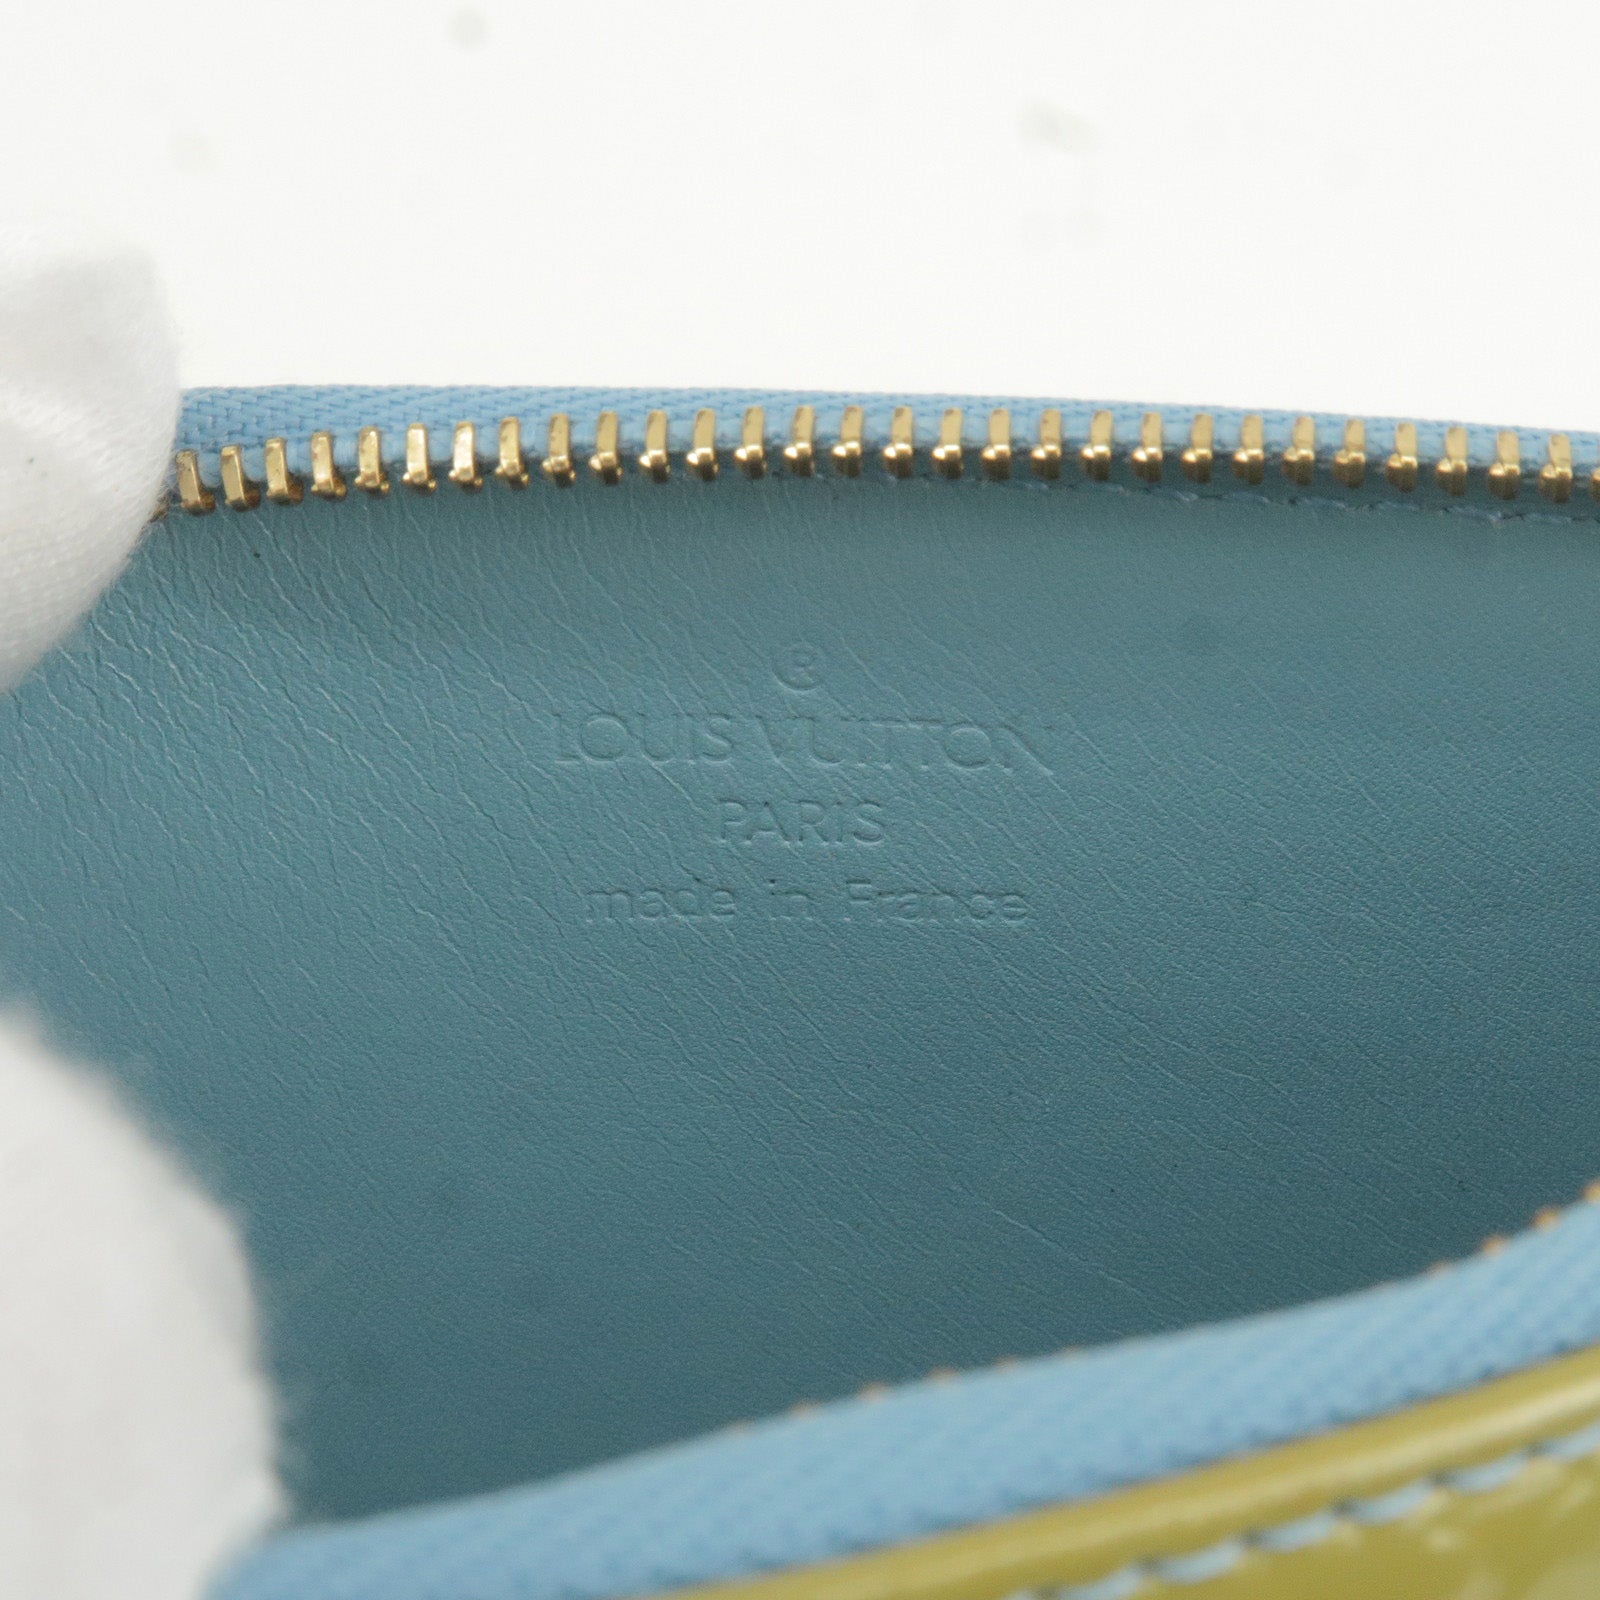 Louis-Vuitton-Monogram-Vernis-Lexington-Pouch-Baby-Blue-M91011